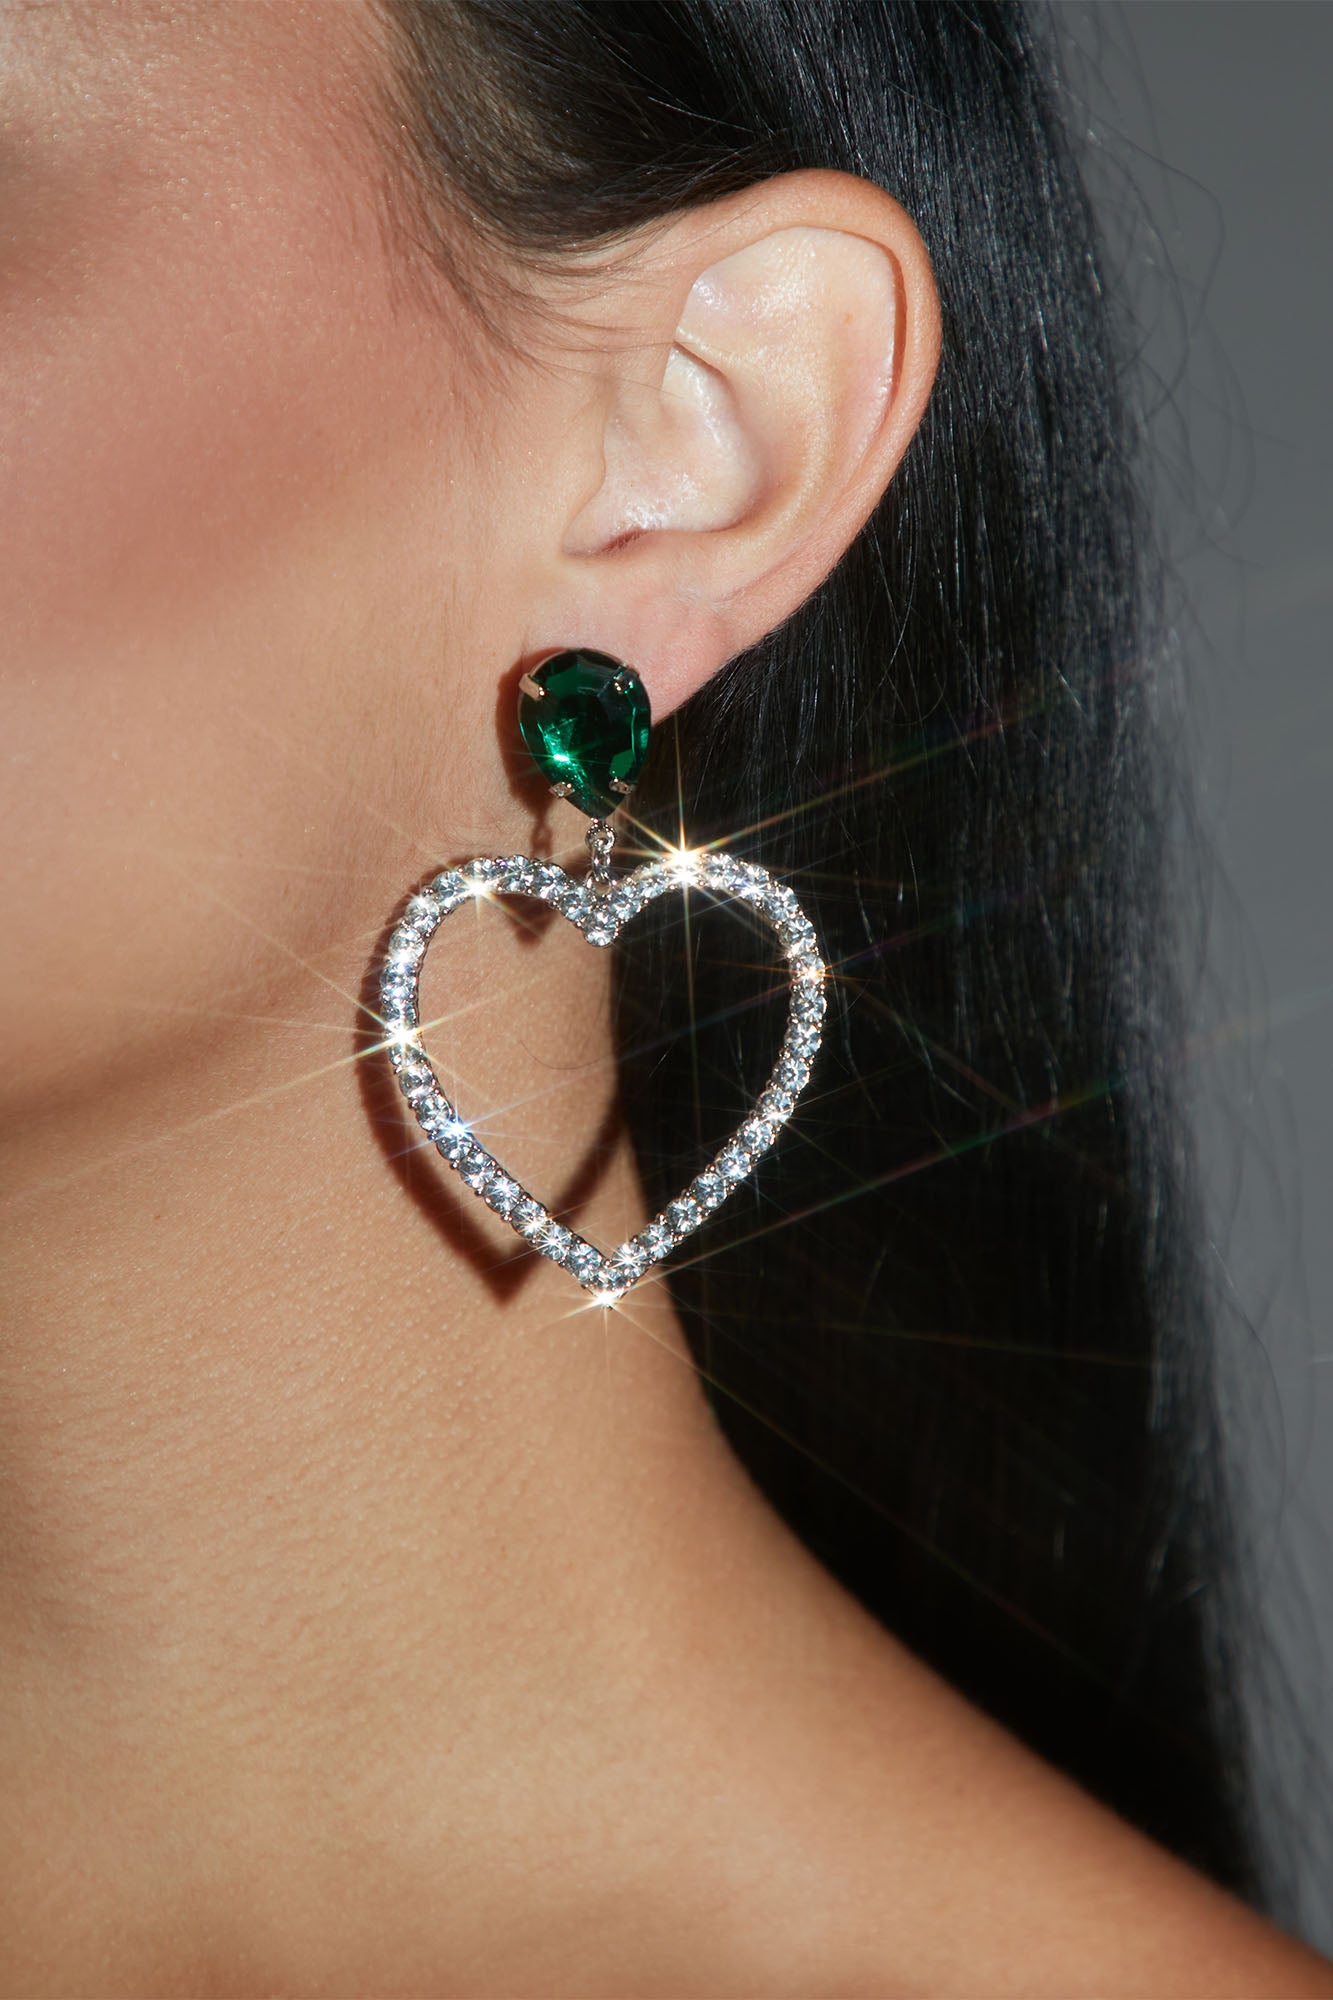 Follow Your Heart Earrings - Green